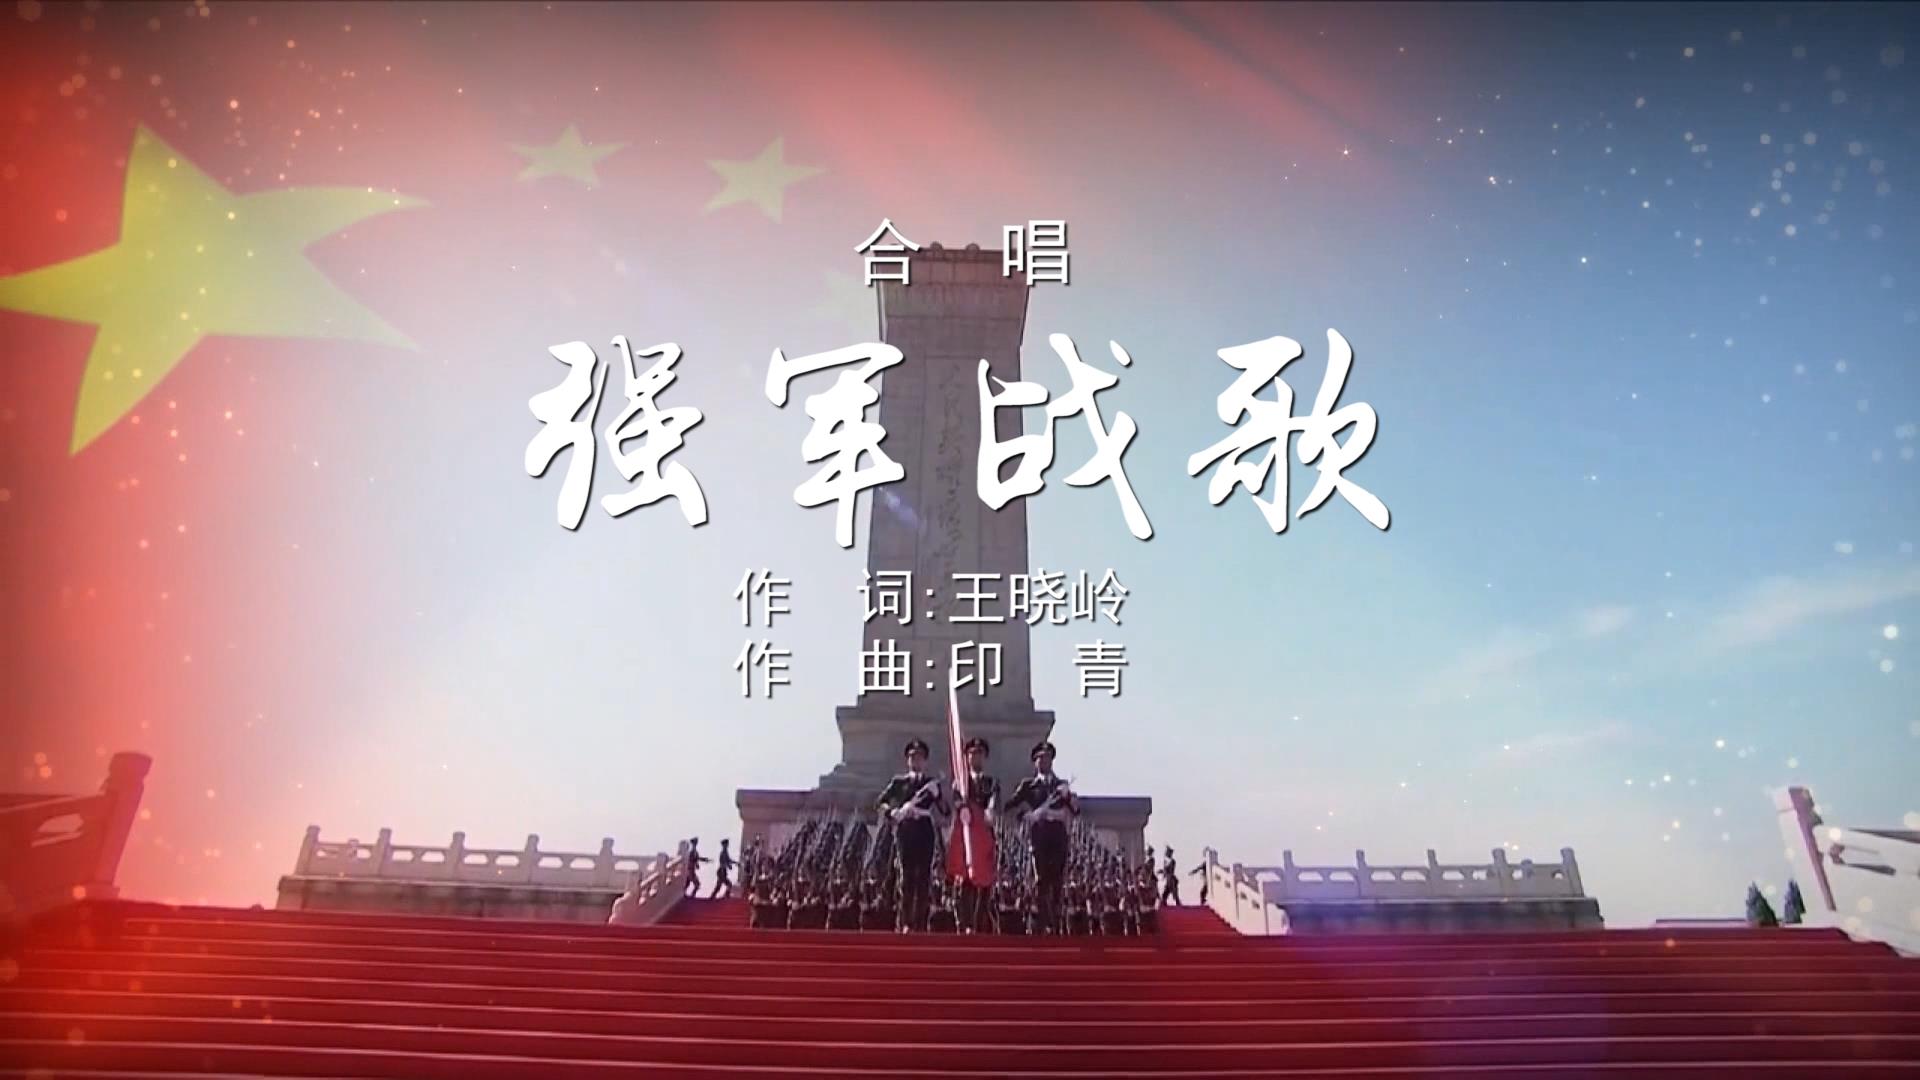 强军战歌 MV歌颂祖国字幕配乐伴奏舞台演出LED背景大屏幕视频素材TV